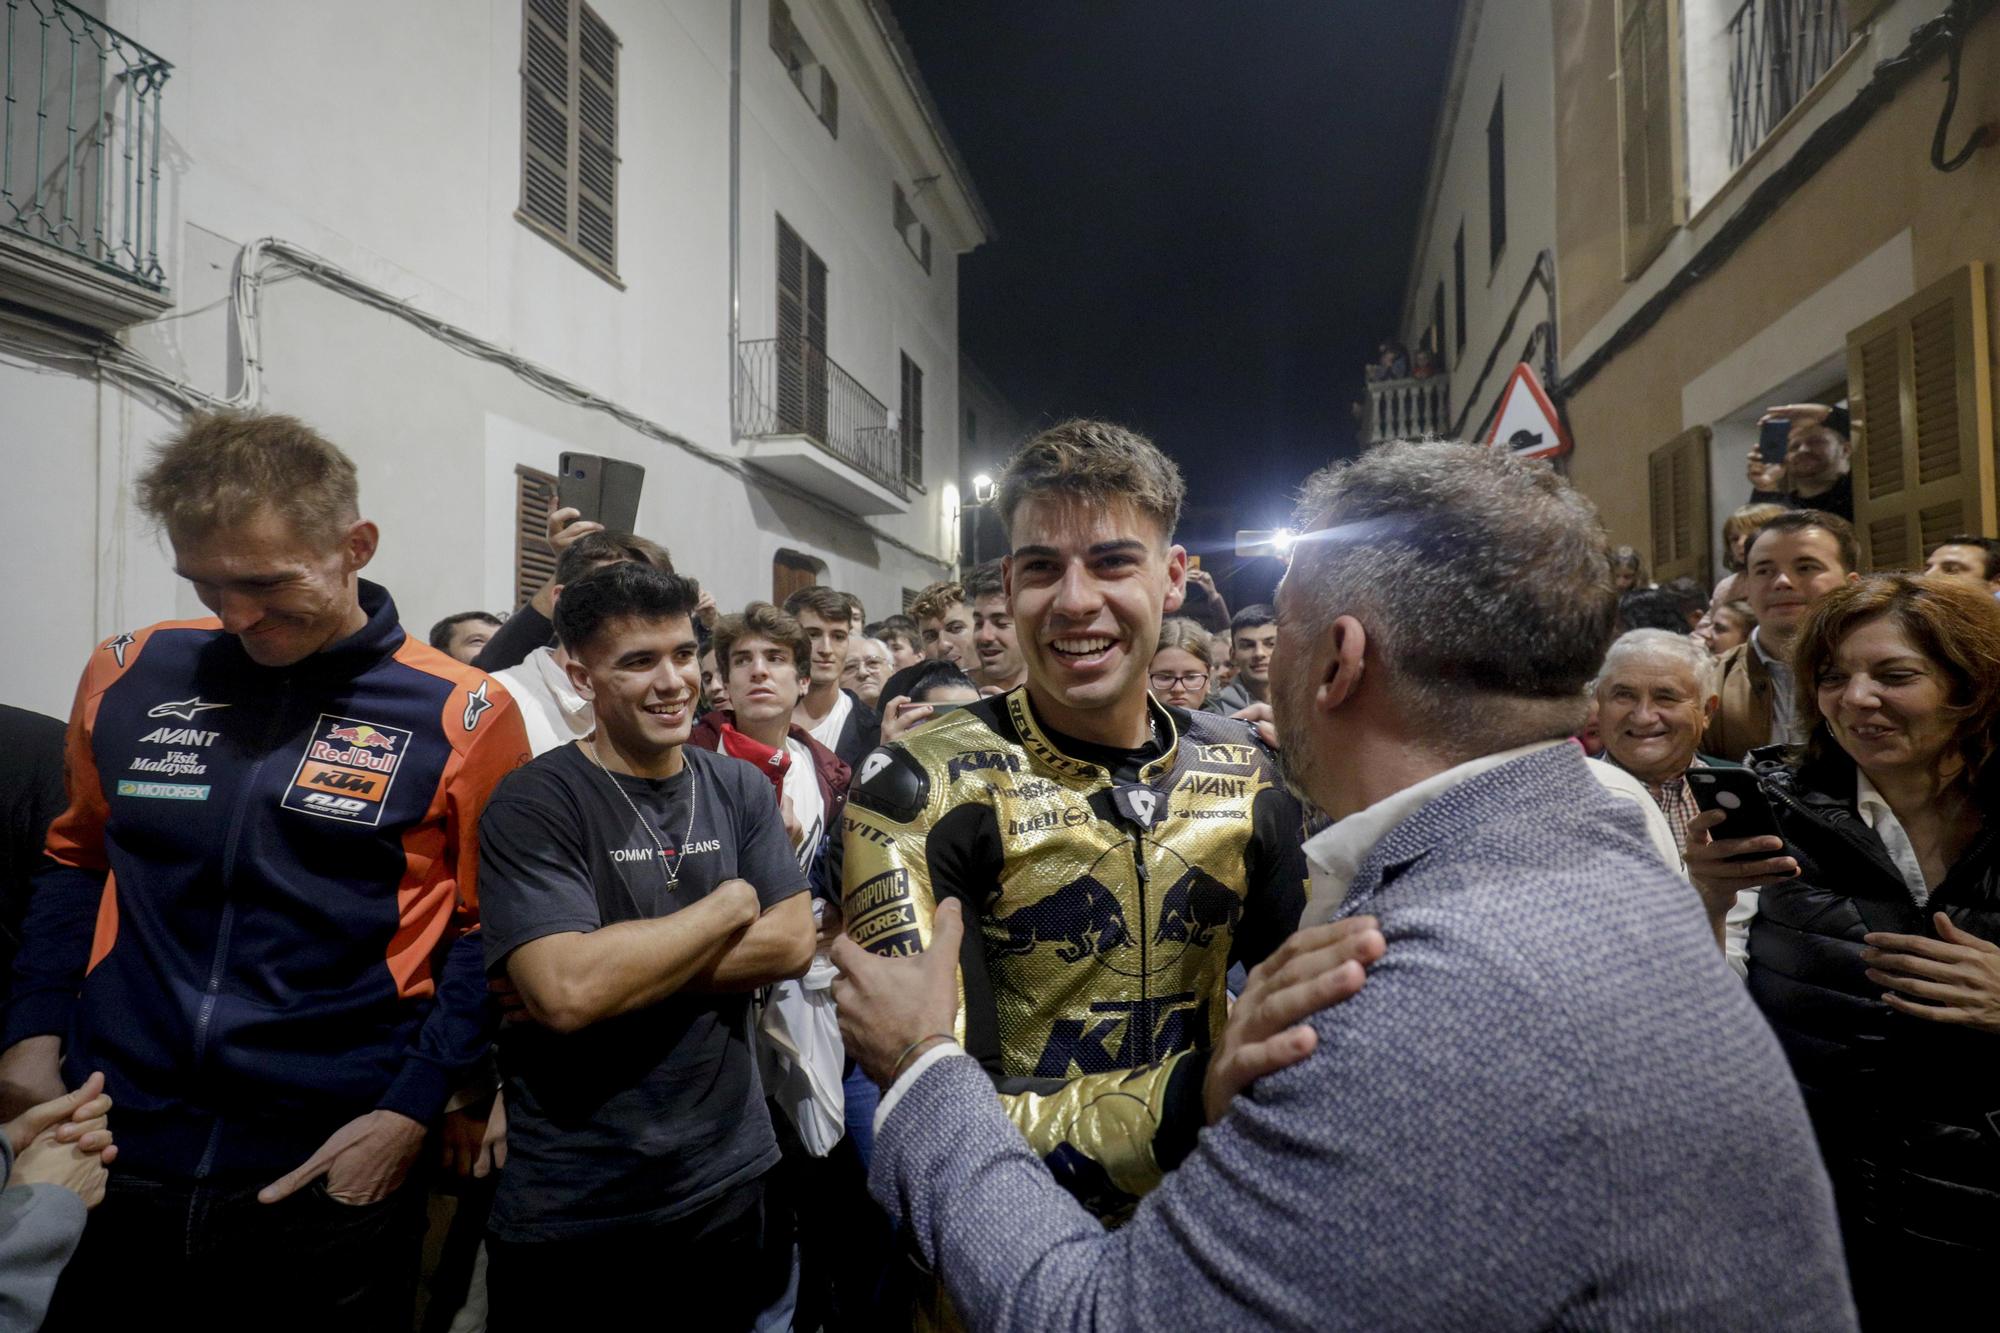 Sencelles recibe al campeón del mundo en Moto2 Augusto Fernández